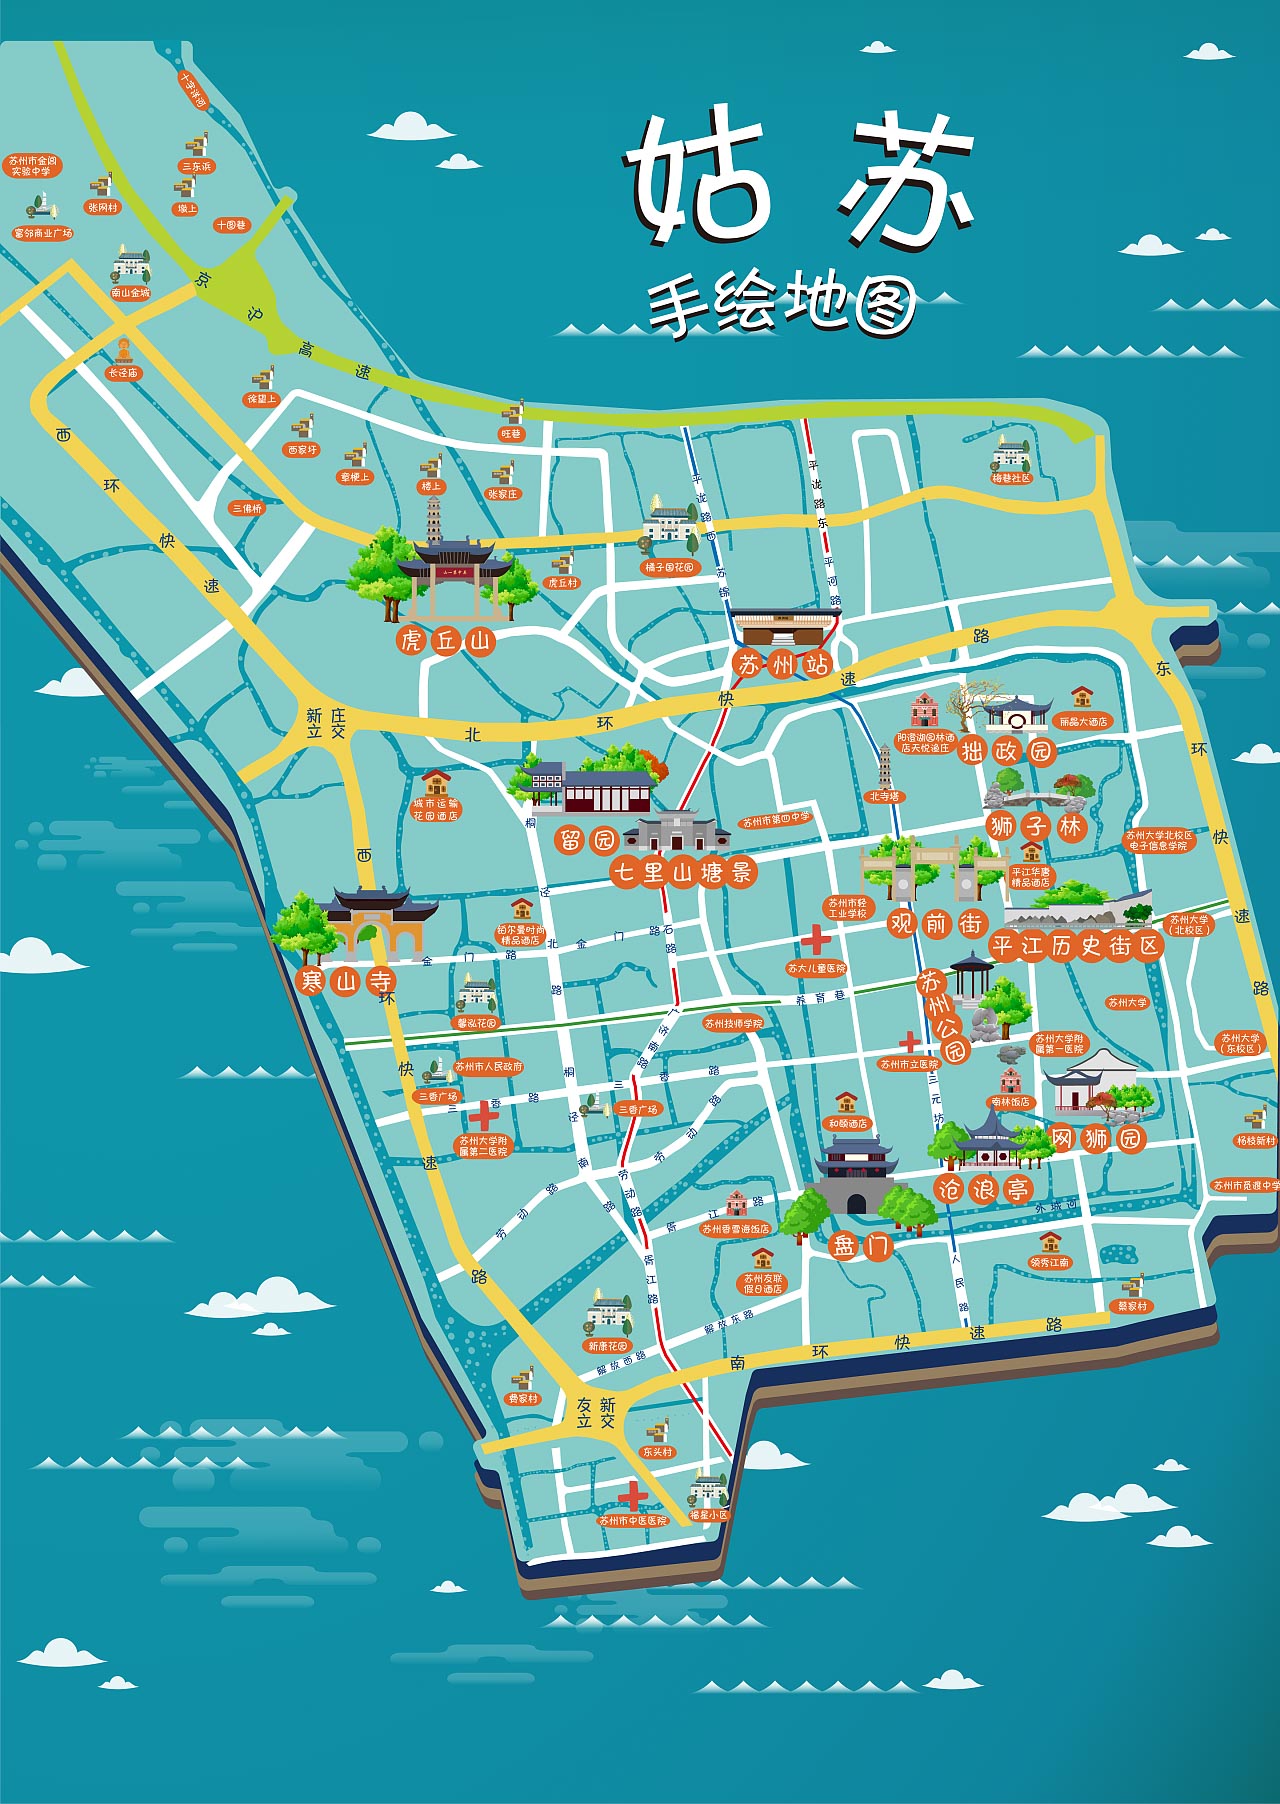 渔洋镇手绘地图景区的文化宝藏